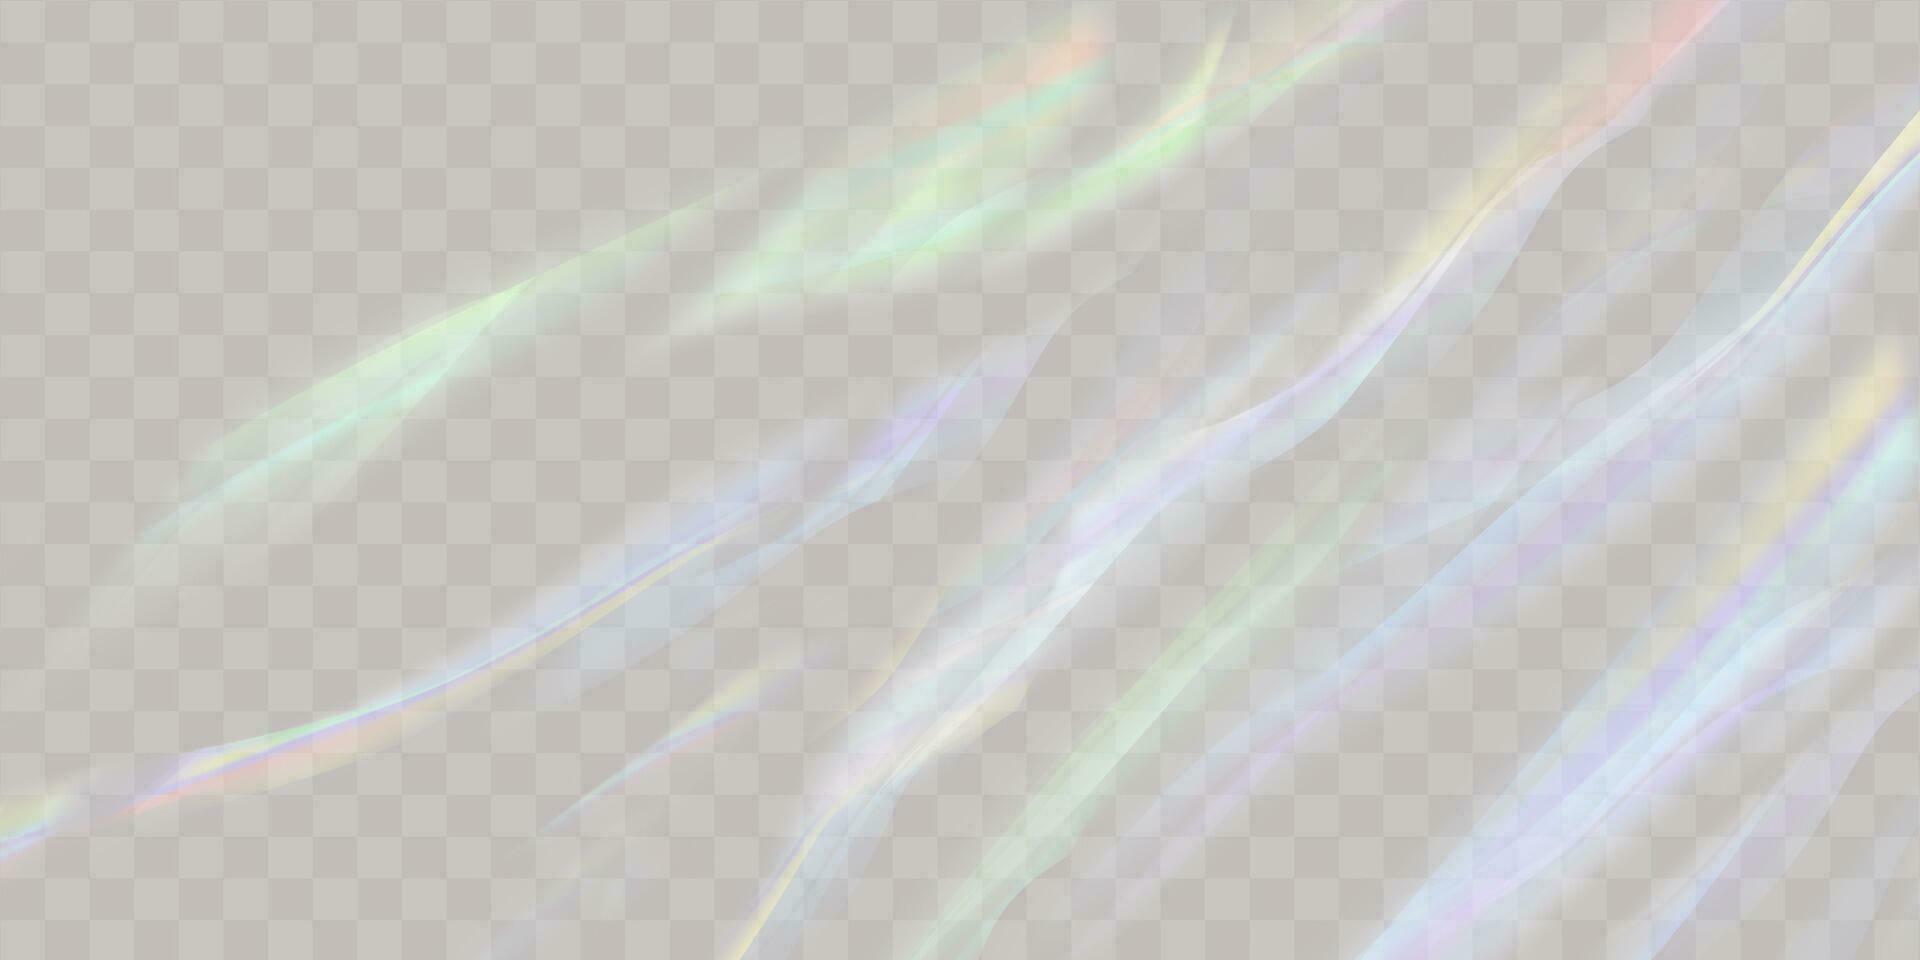 ein einstellen von bunt Vektor Linse, Kristall Regenbogen Licht und Fackel transparent Effekte.Overlay zum hintergründe.dreieckig Prisma Konzept.